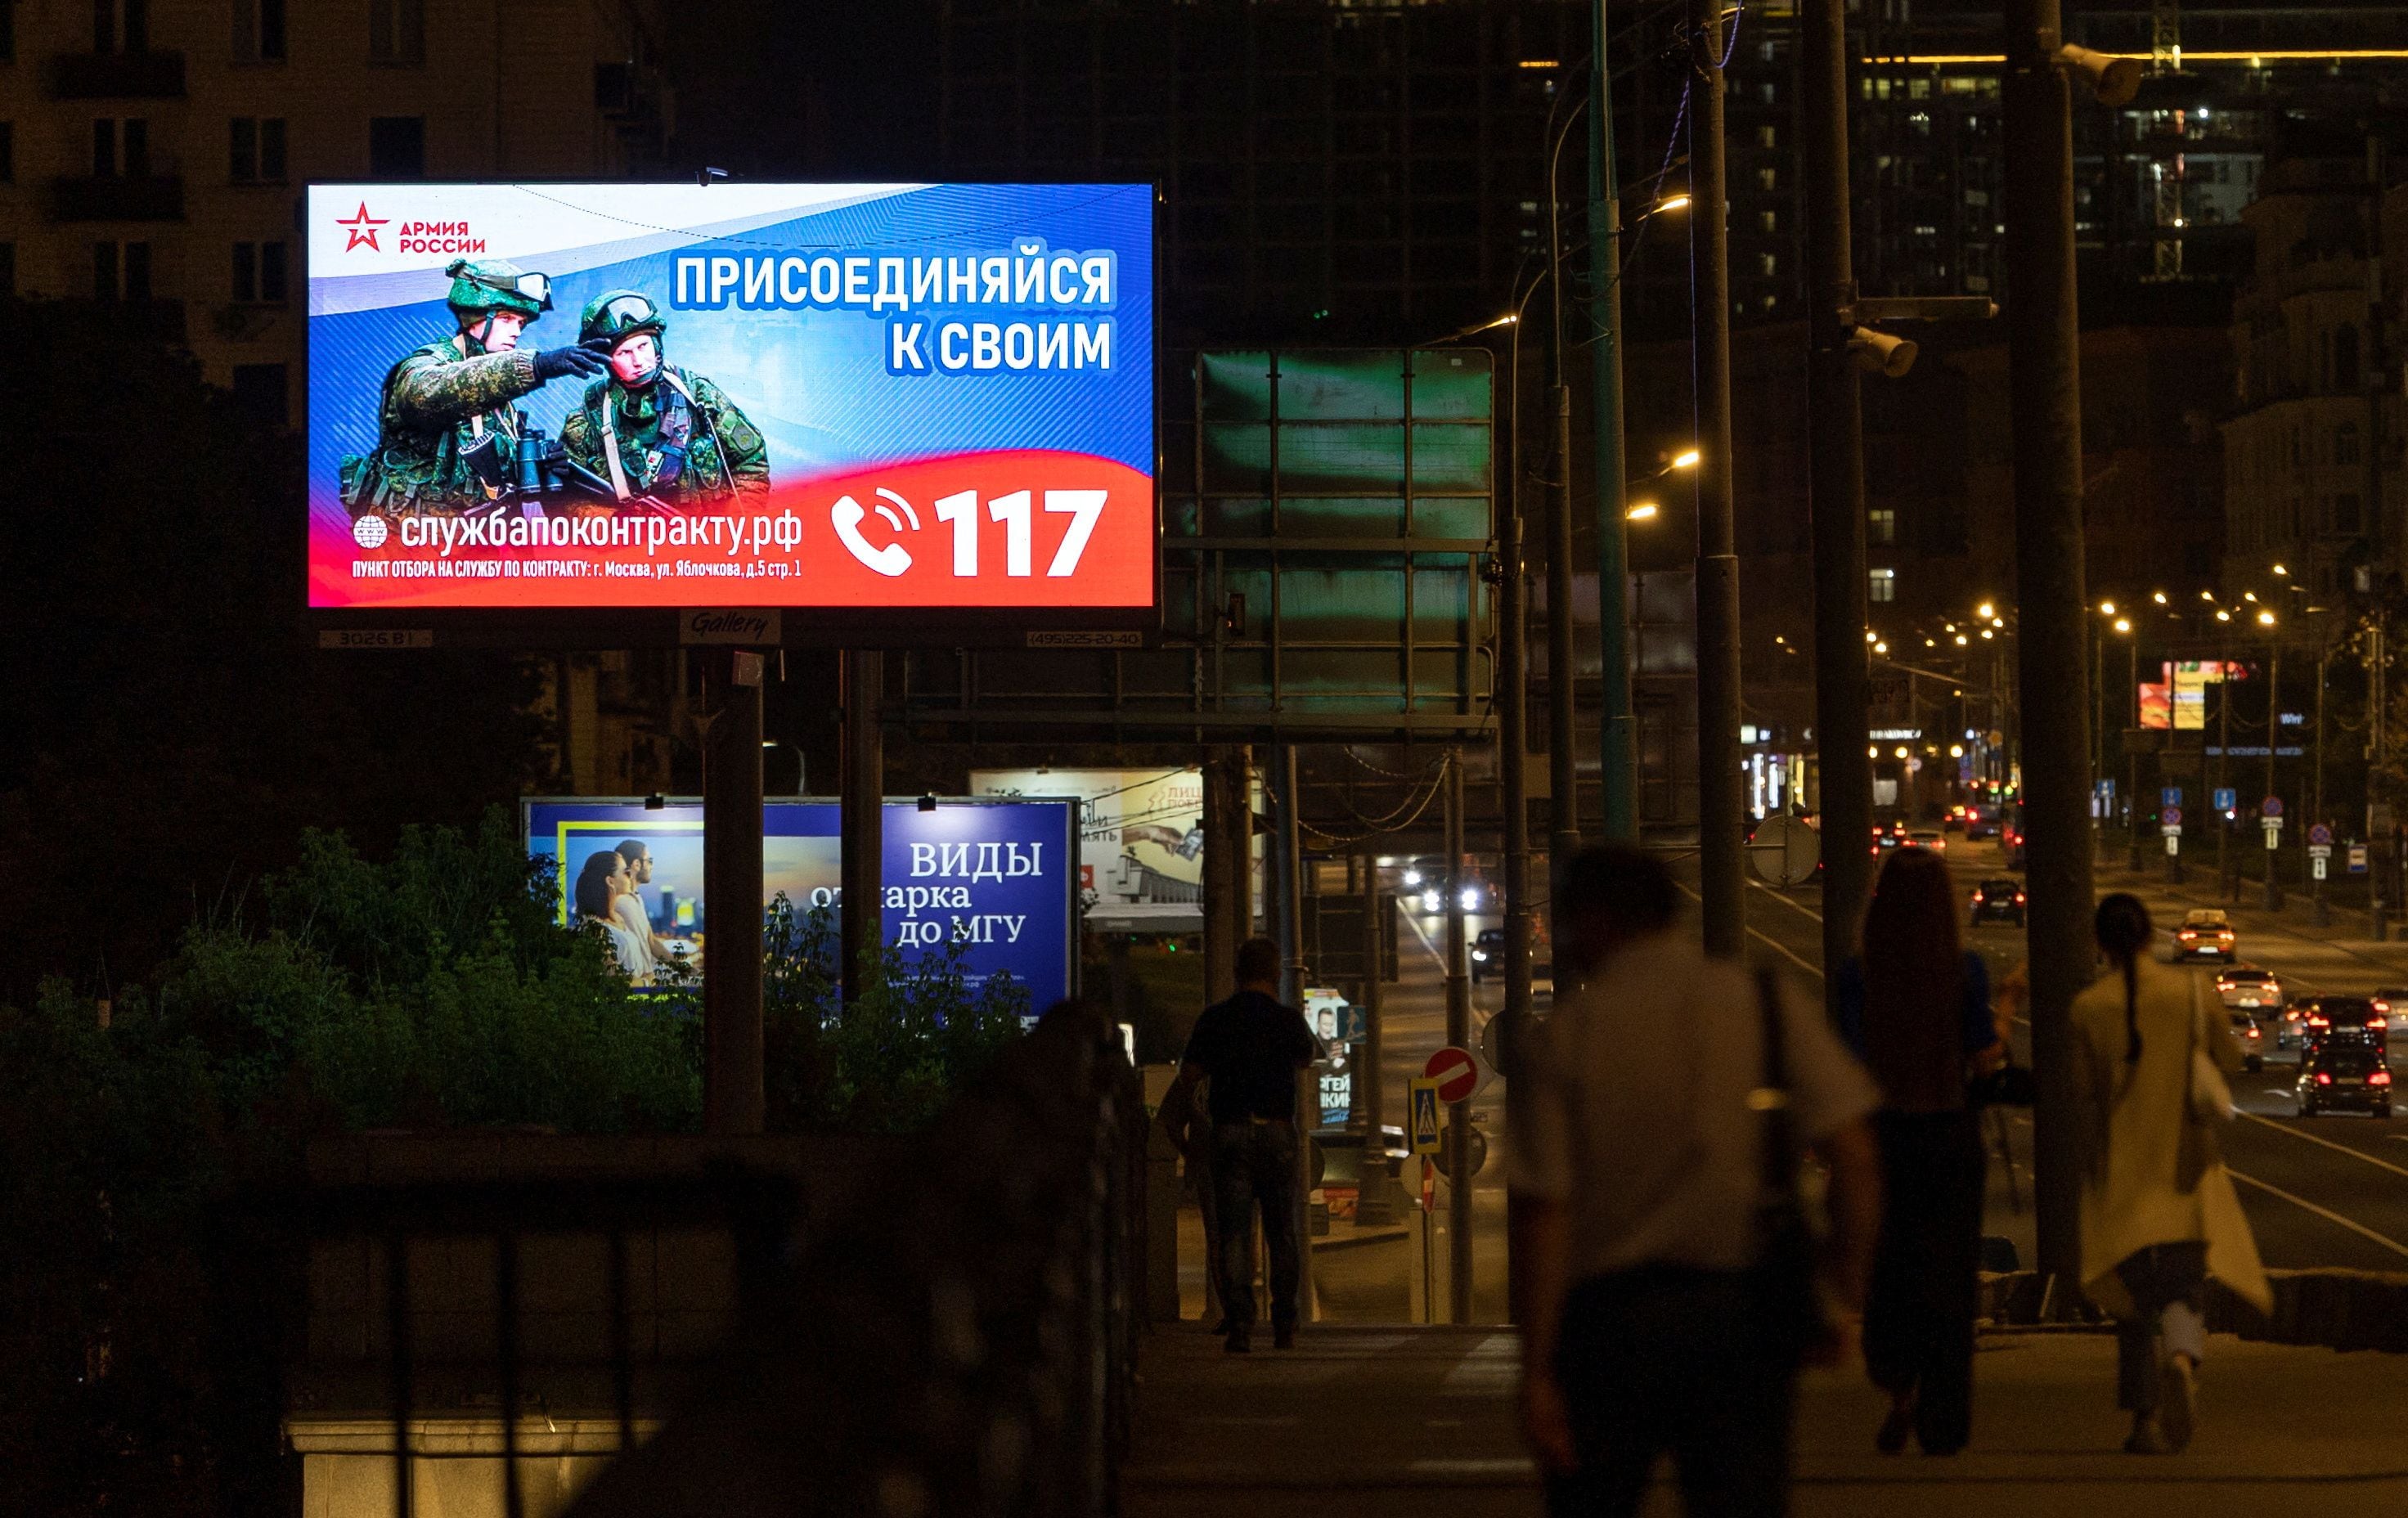 Una valla publicitaria promocionando el servicio en el ejército ruso en el centro de Moscú (REUTERS/Maxim Shemetov)